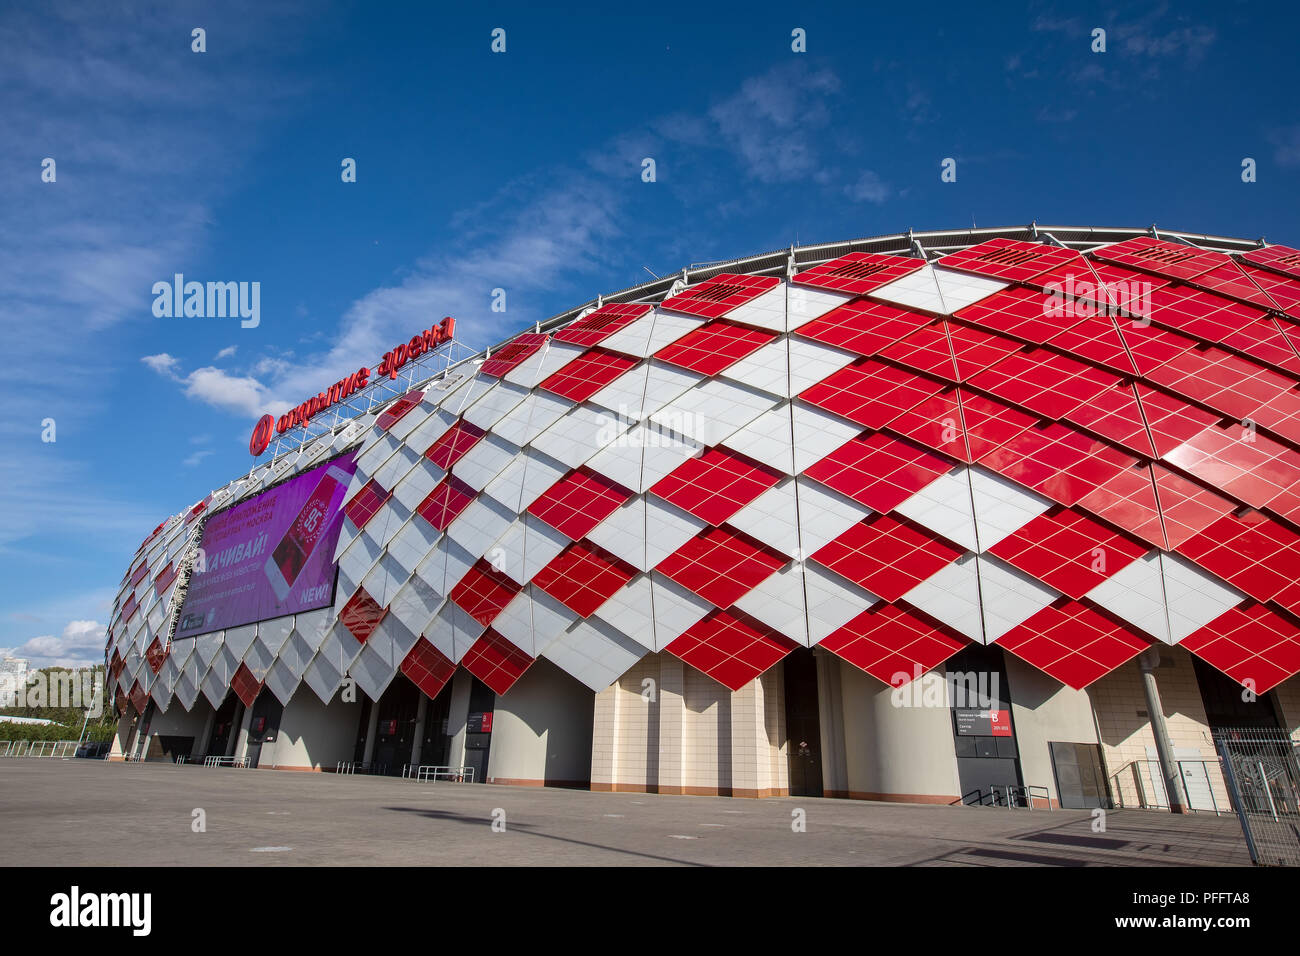 Stadium Spartak / Otkrytiye arena in Moscow